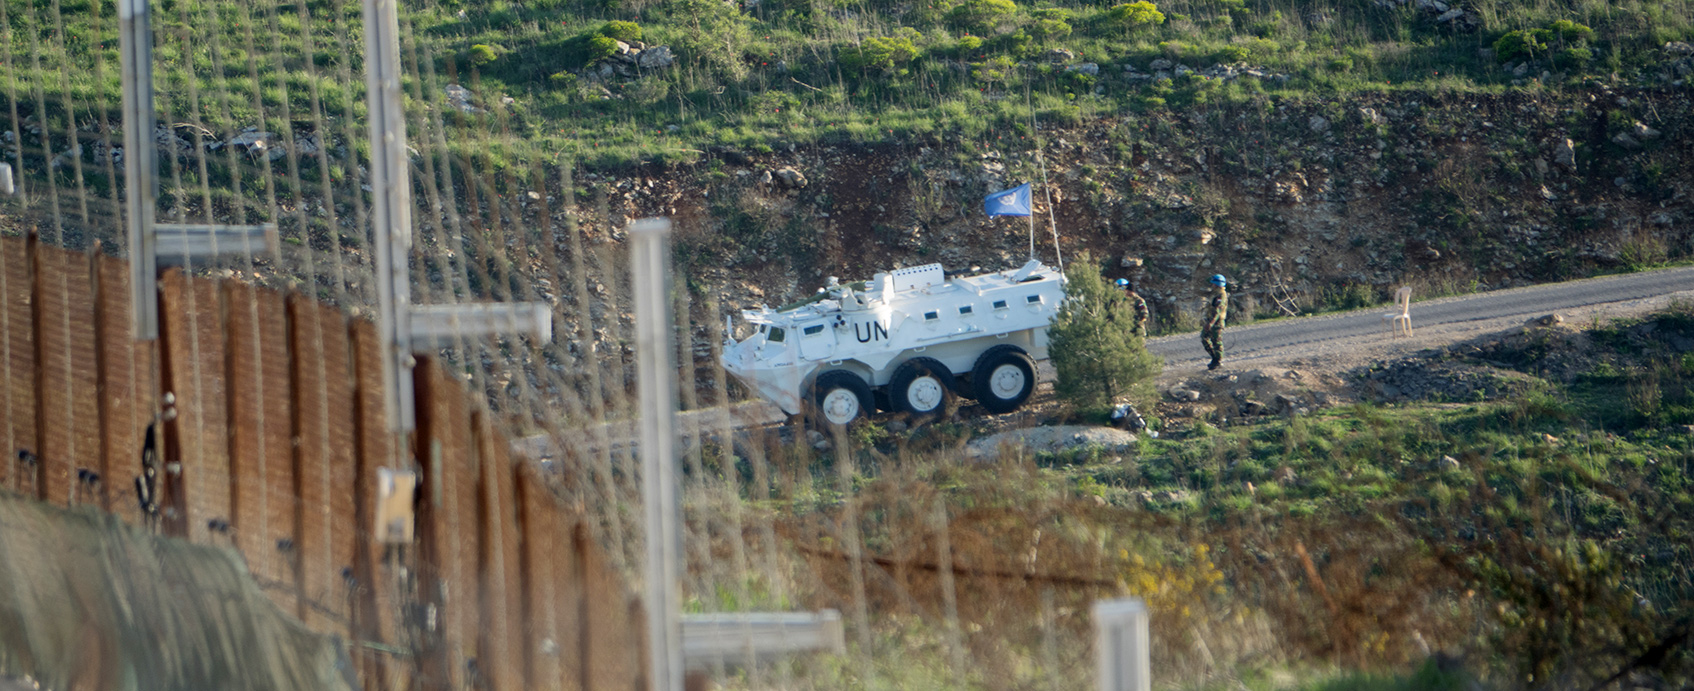 An der Grenze zum Libanon sind UN-Einheiten stationiert.